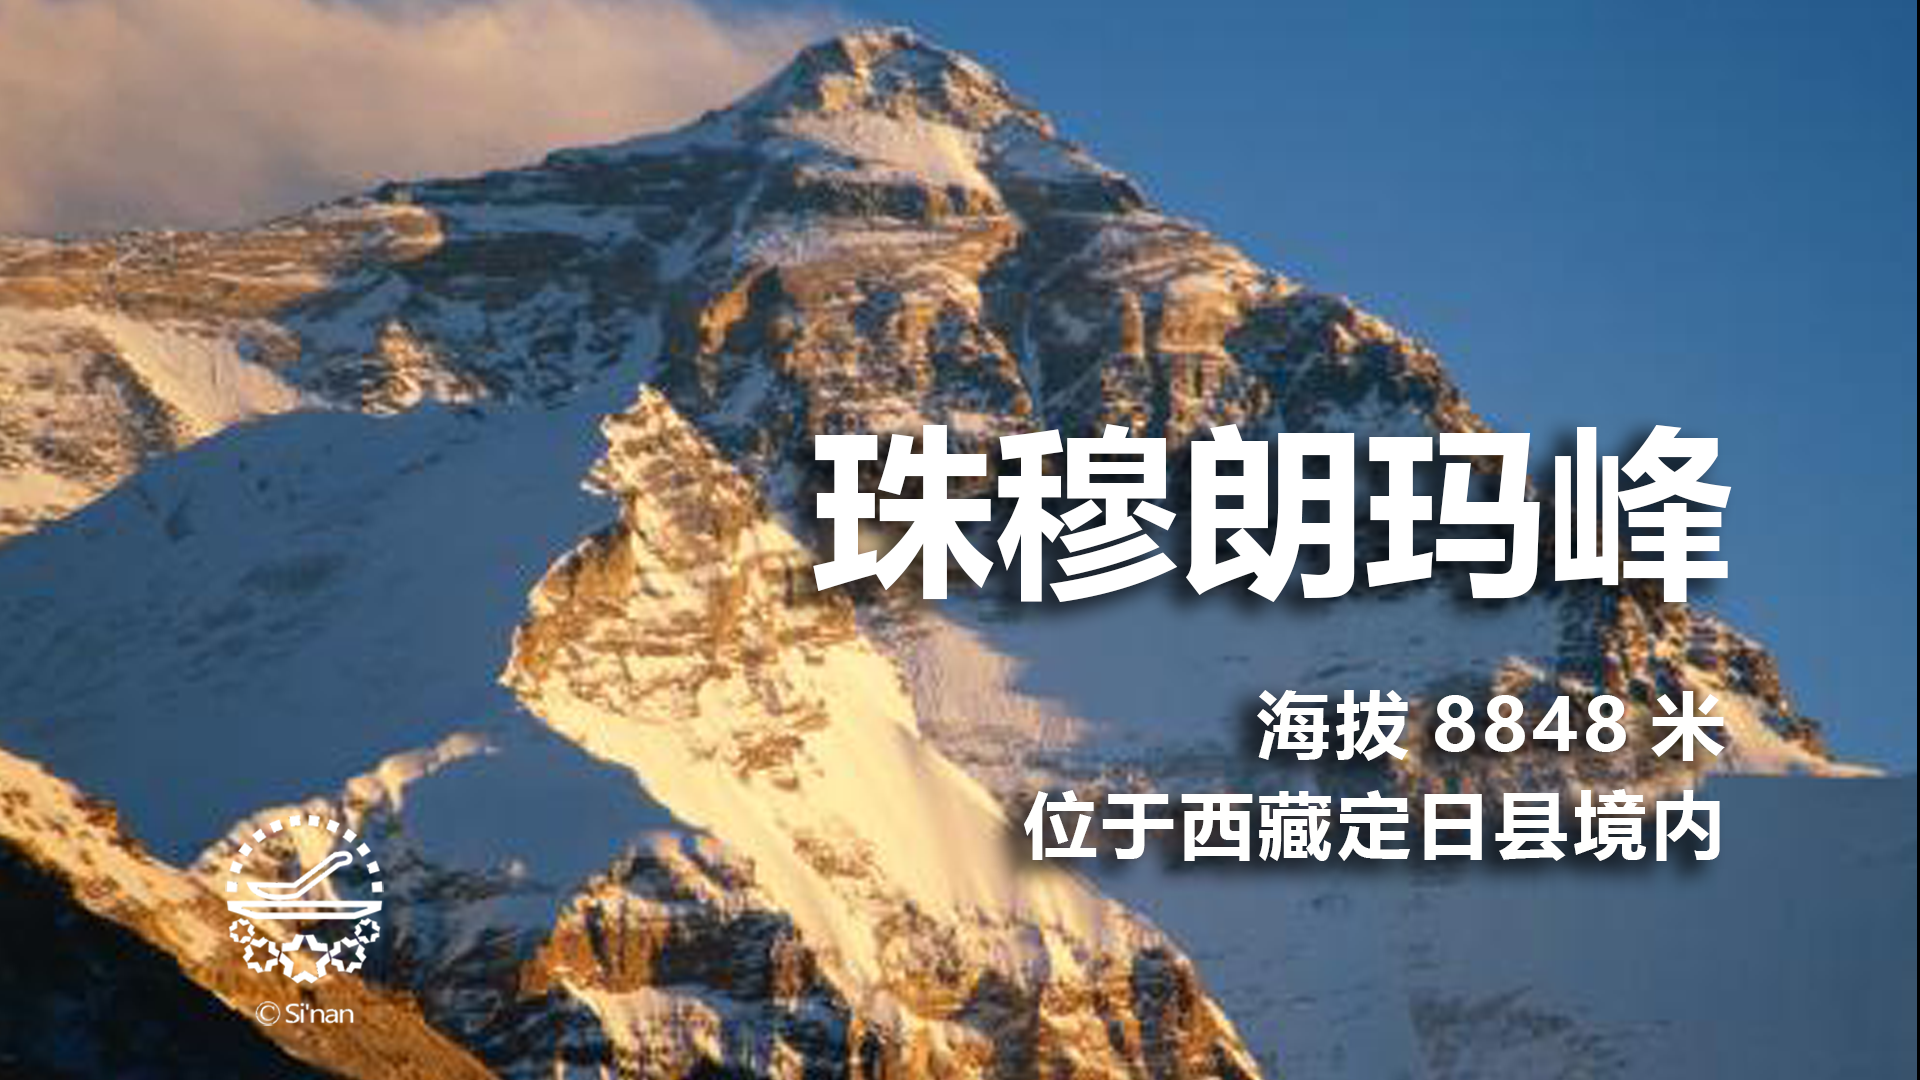 <b>2020珠峰高程测量中国登山队登顶,测量工作已经完成</b>